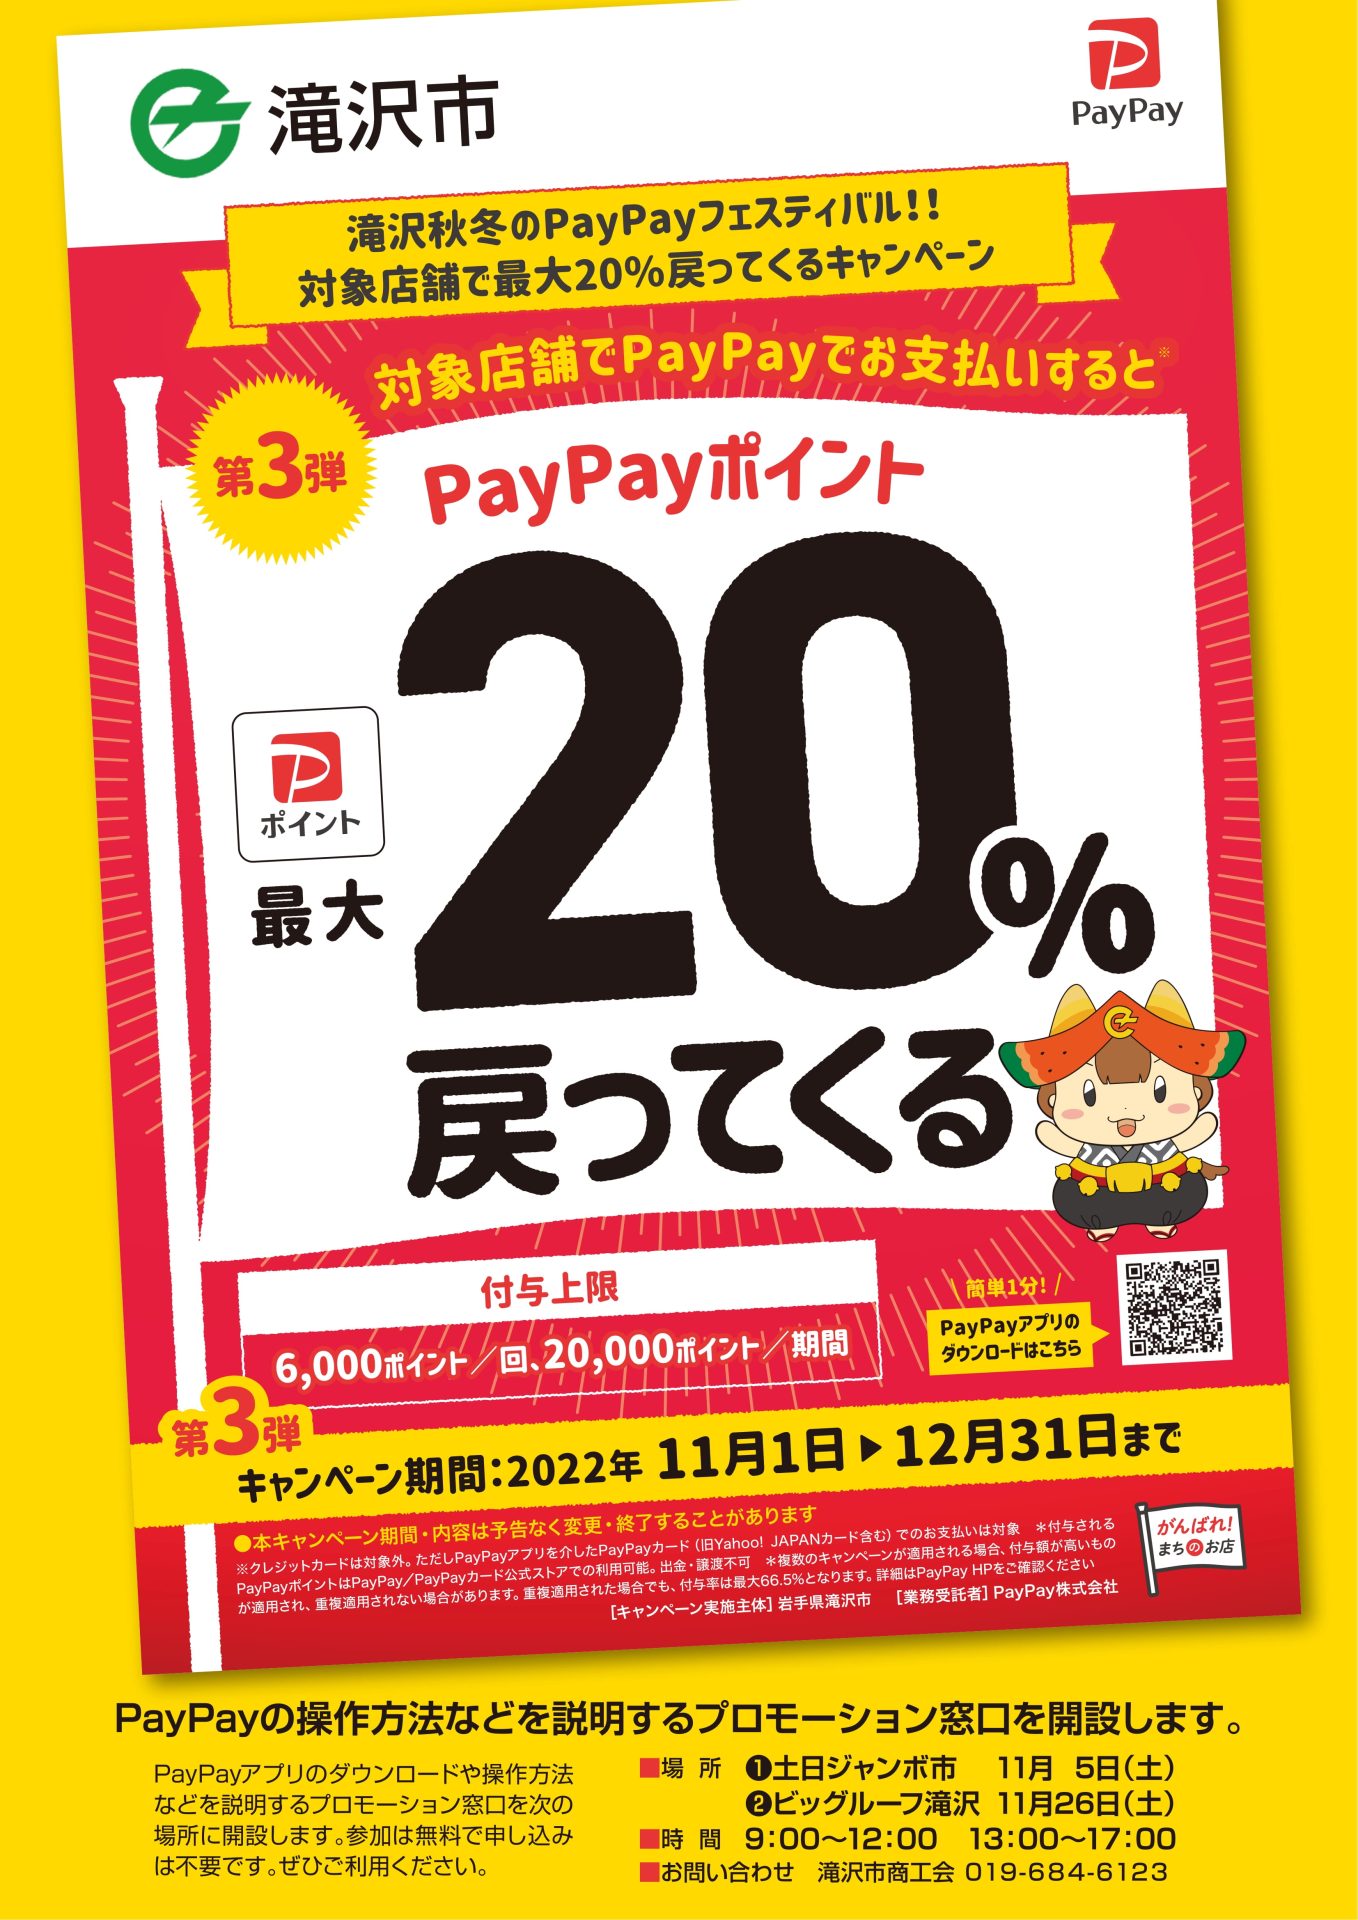 【再掲】滝沢秋冬のPayPayフェスティバル!!対象店舗で最大20％戻ってくるキャンペーン